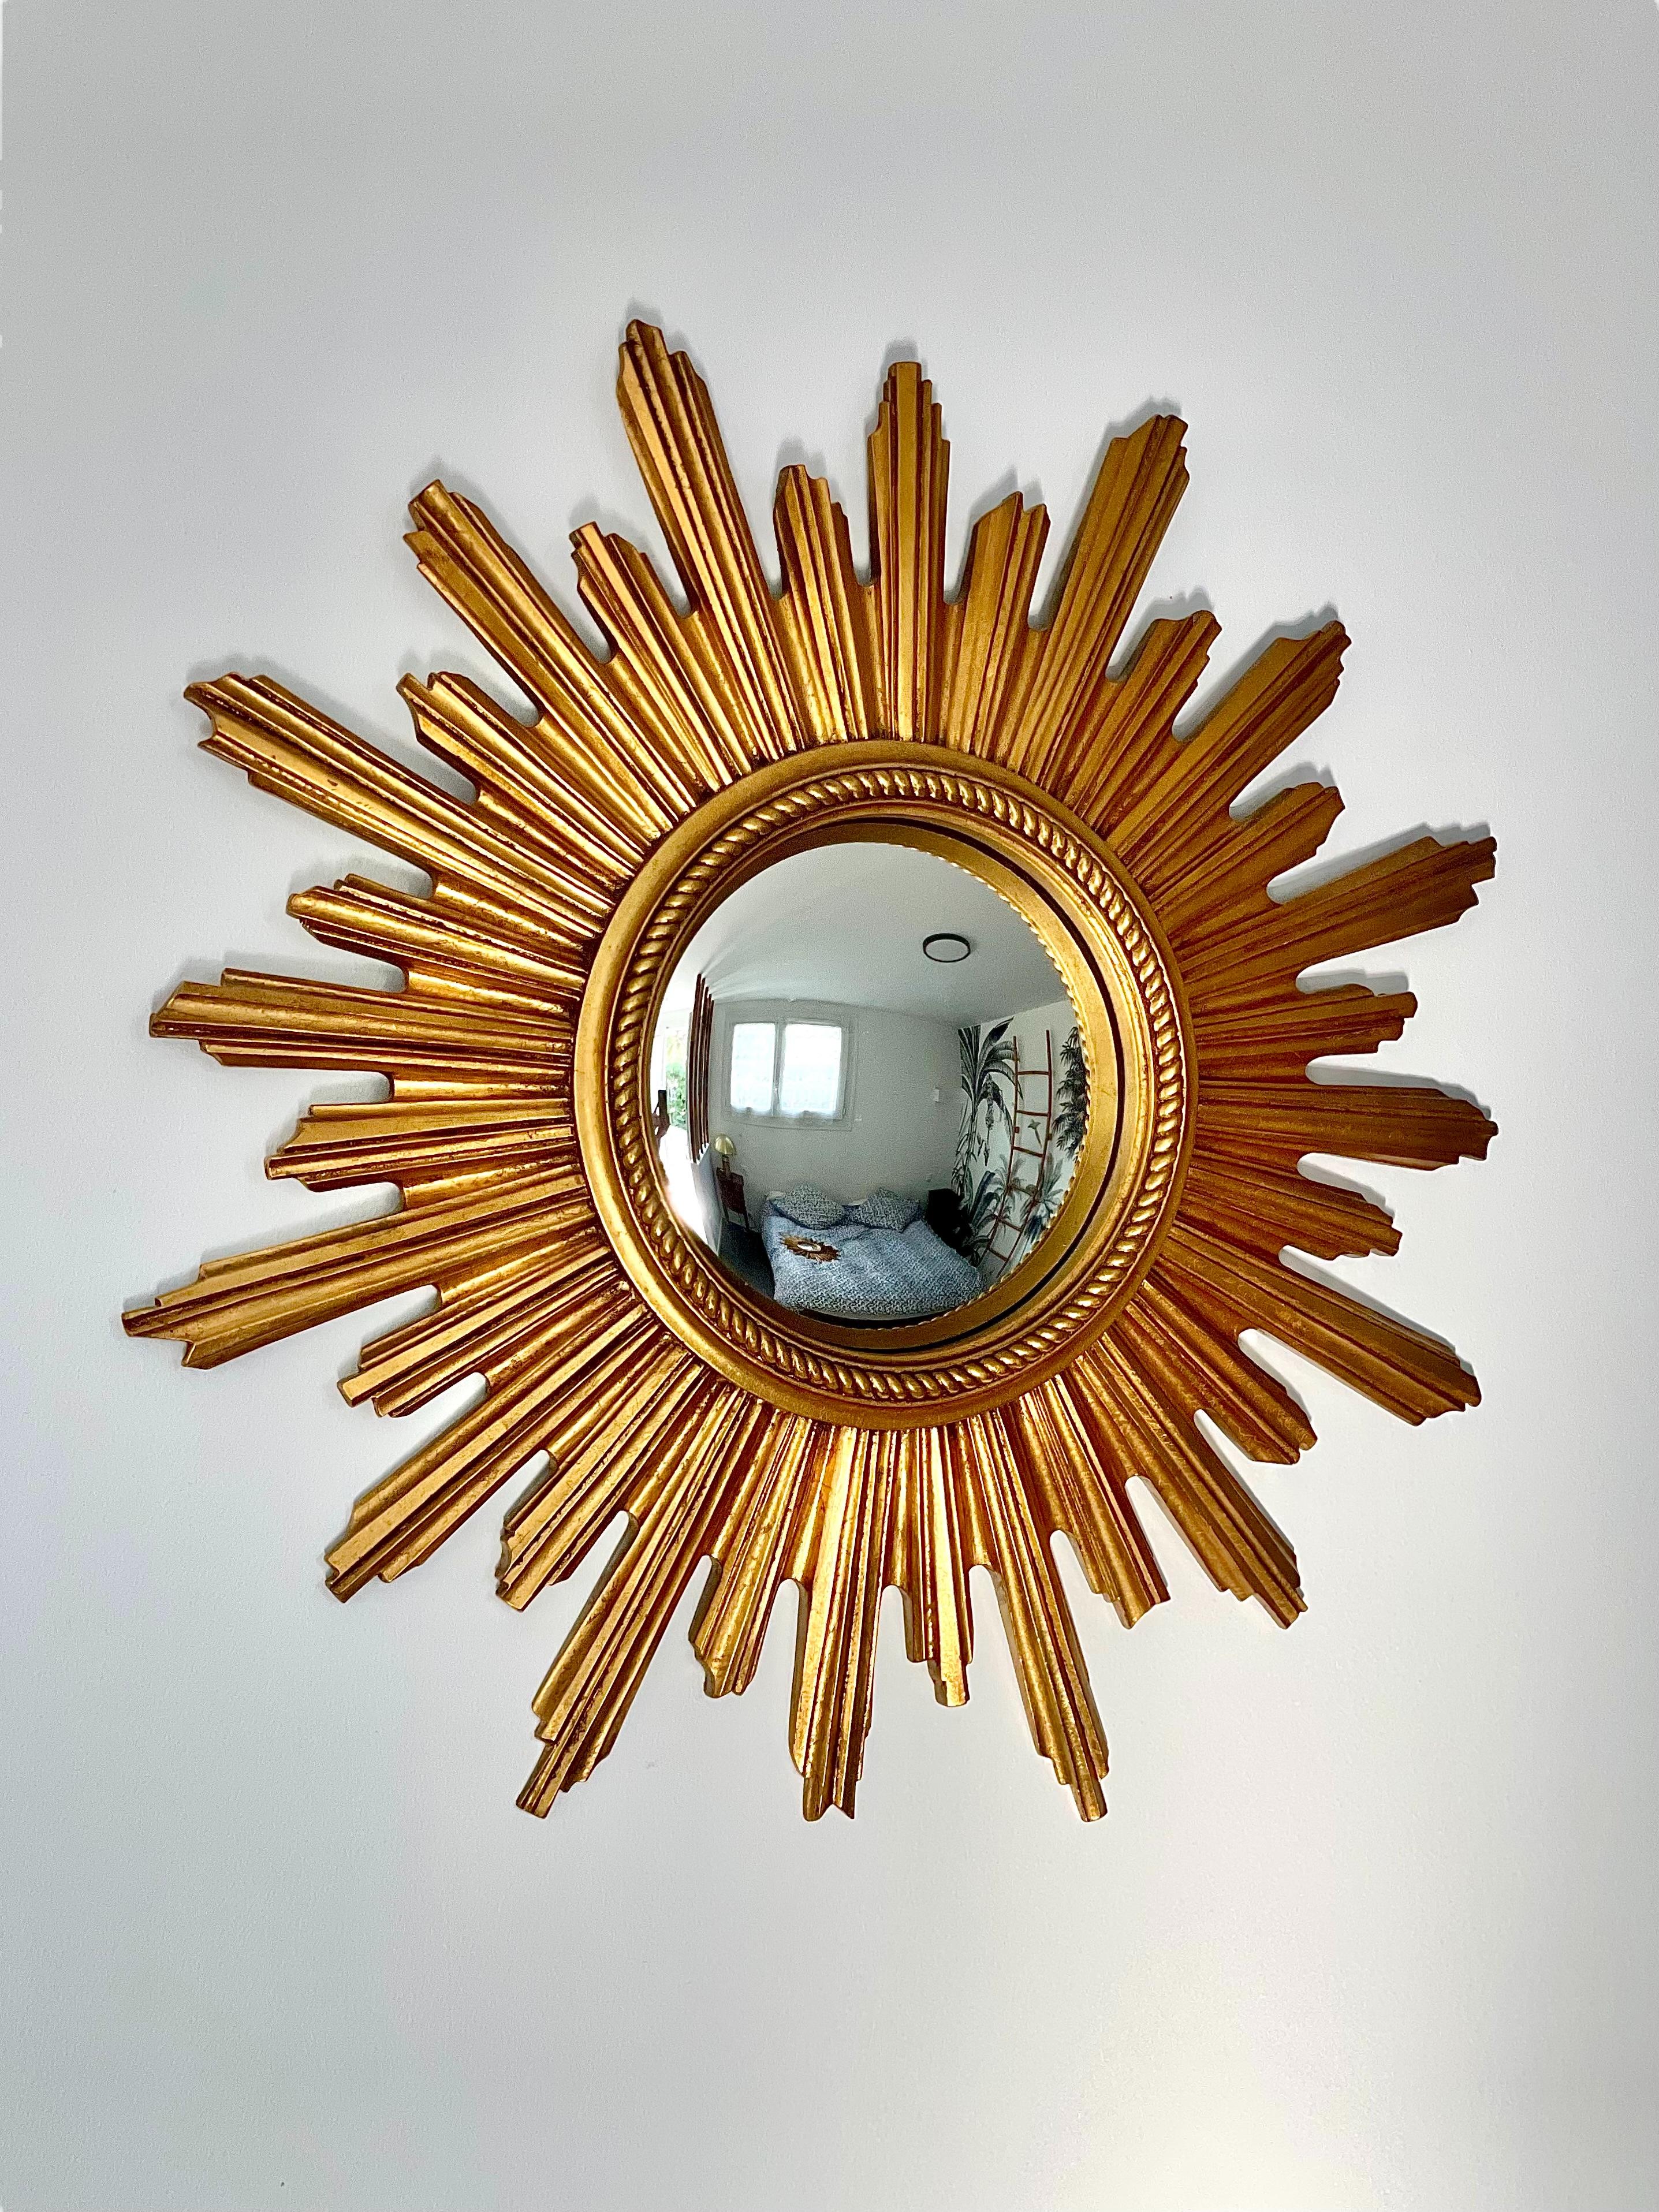 Ce superbe miroir mural vintage à effet soleil présente une plaque de miroir convexe, entourée d'un ensemble de tiges en bois sculpté et doré, qui imitent les rayons du soleil. La plaque de miroir elle-même est bordée d'un cadre classique de perles